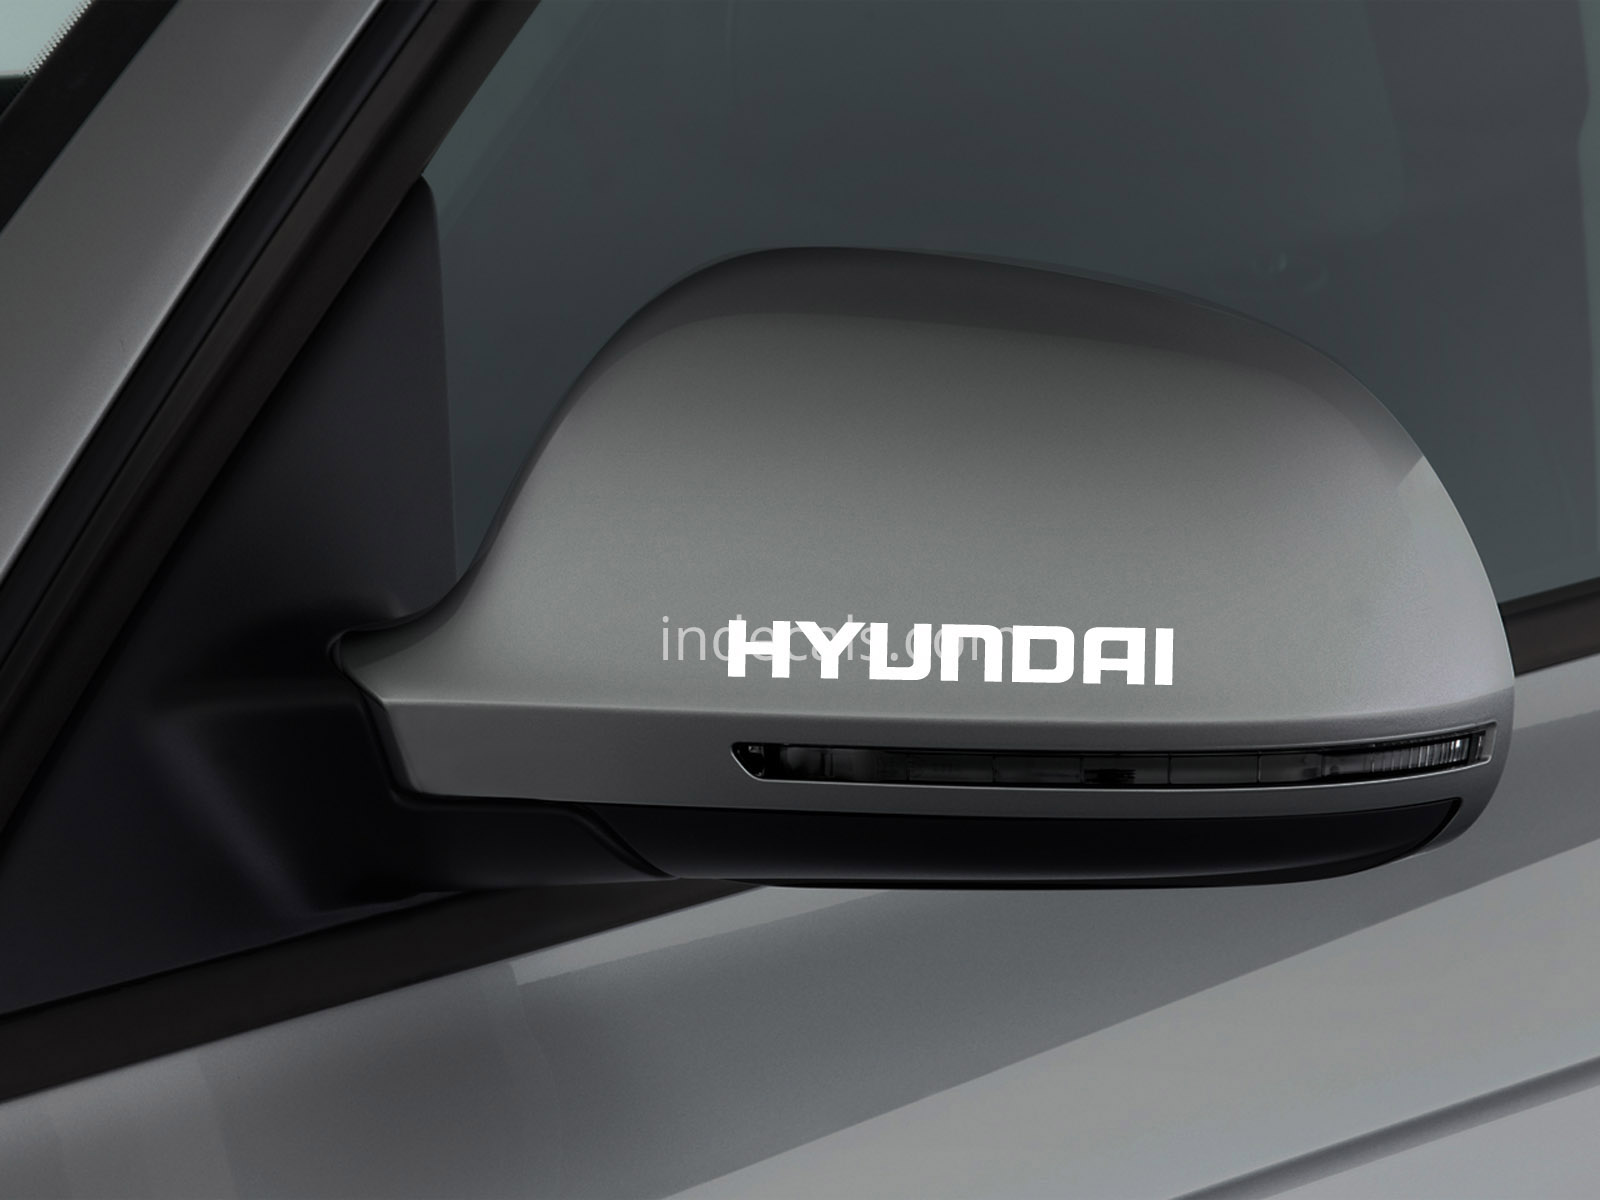 3 x Hyundai Stickers for Mirror - White